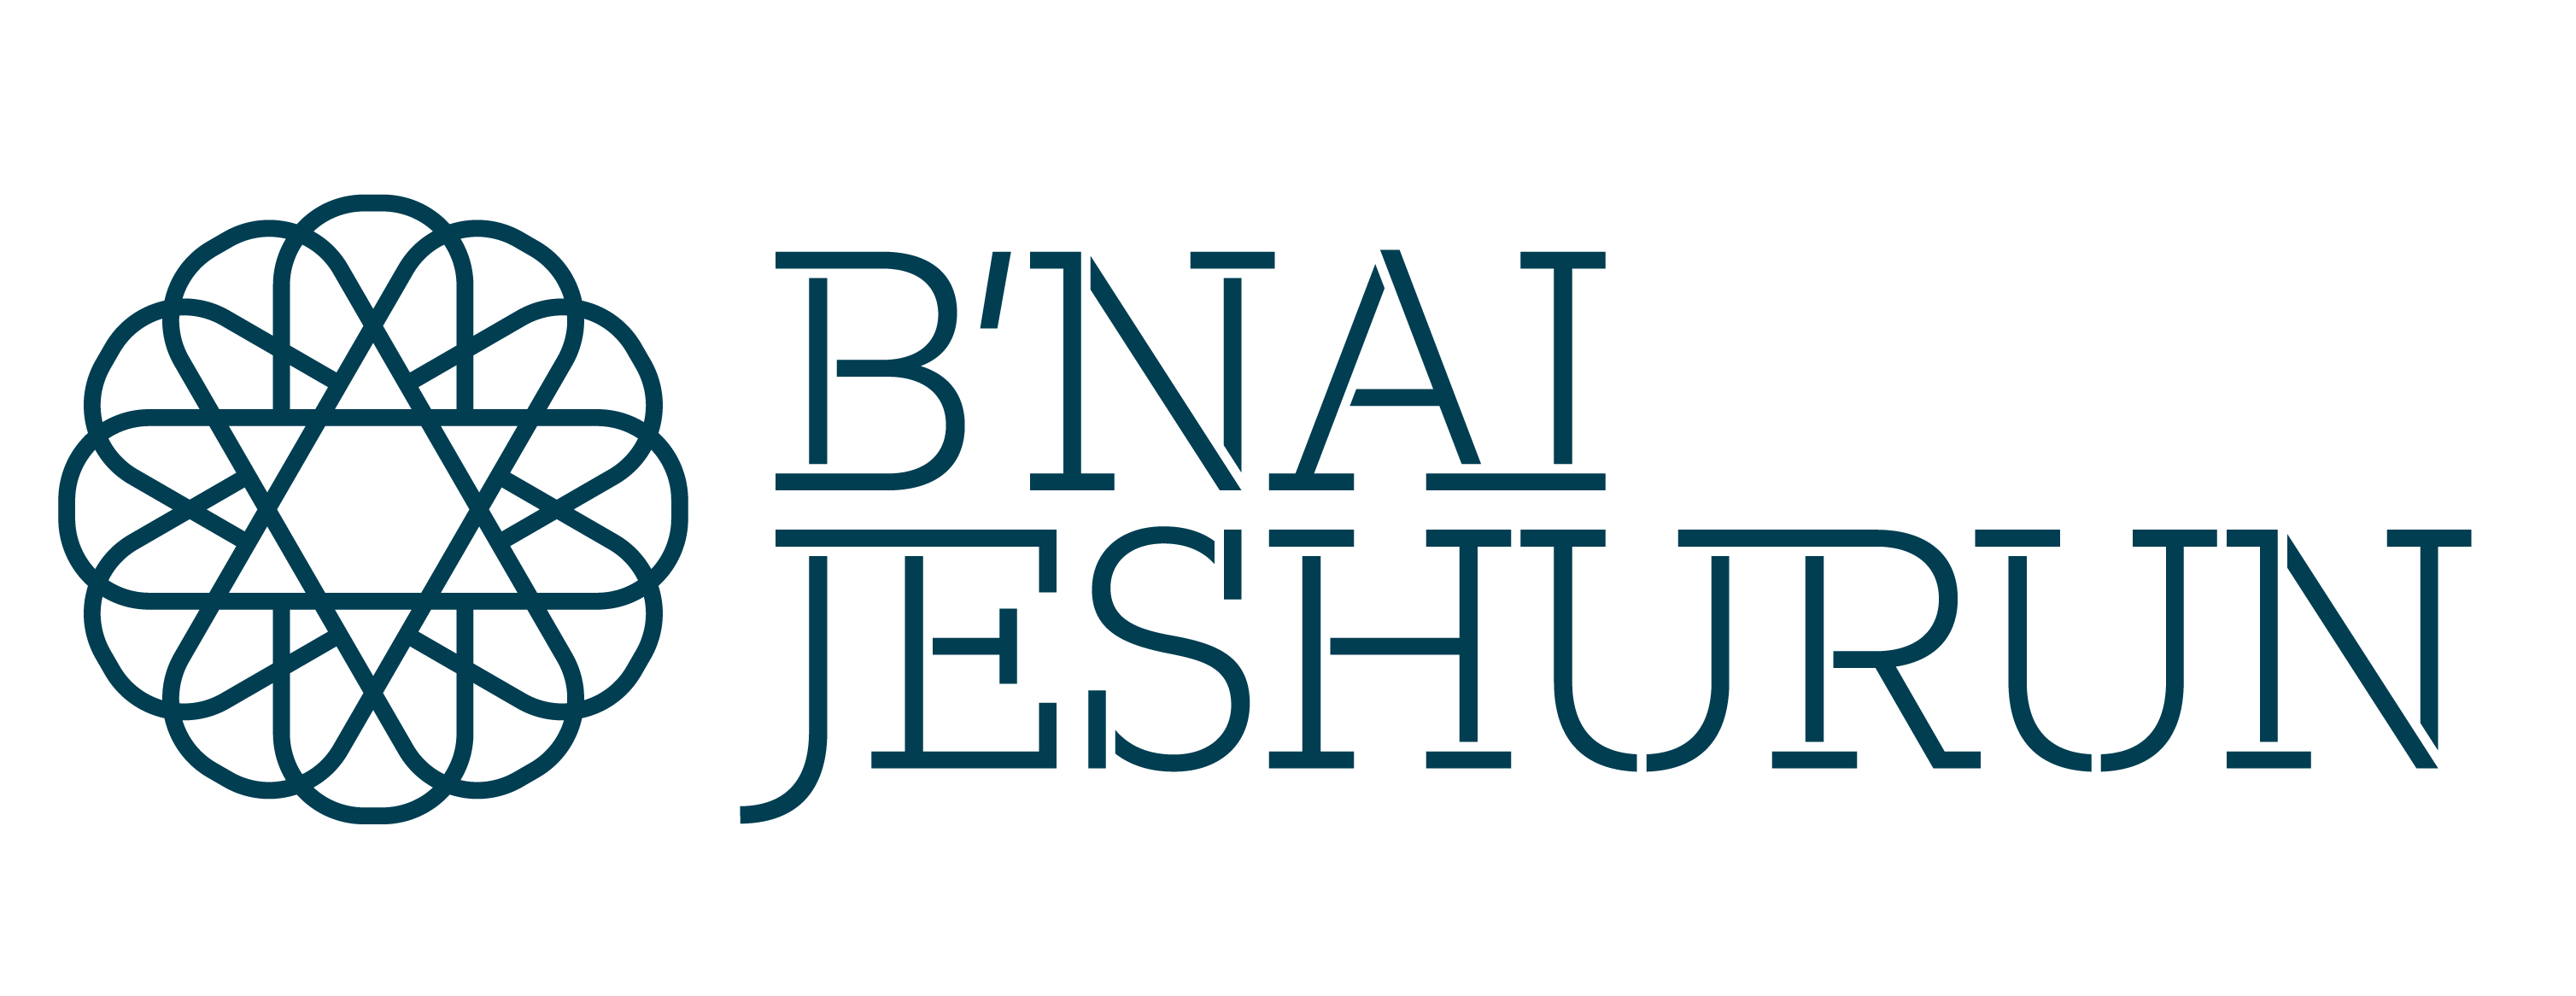 Bnai Jeshurun - Logo